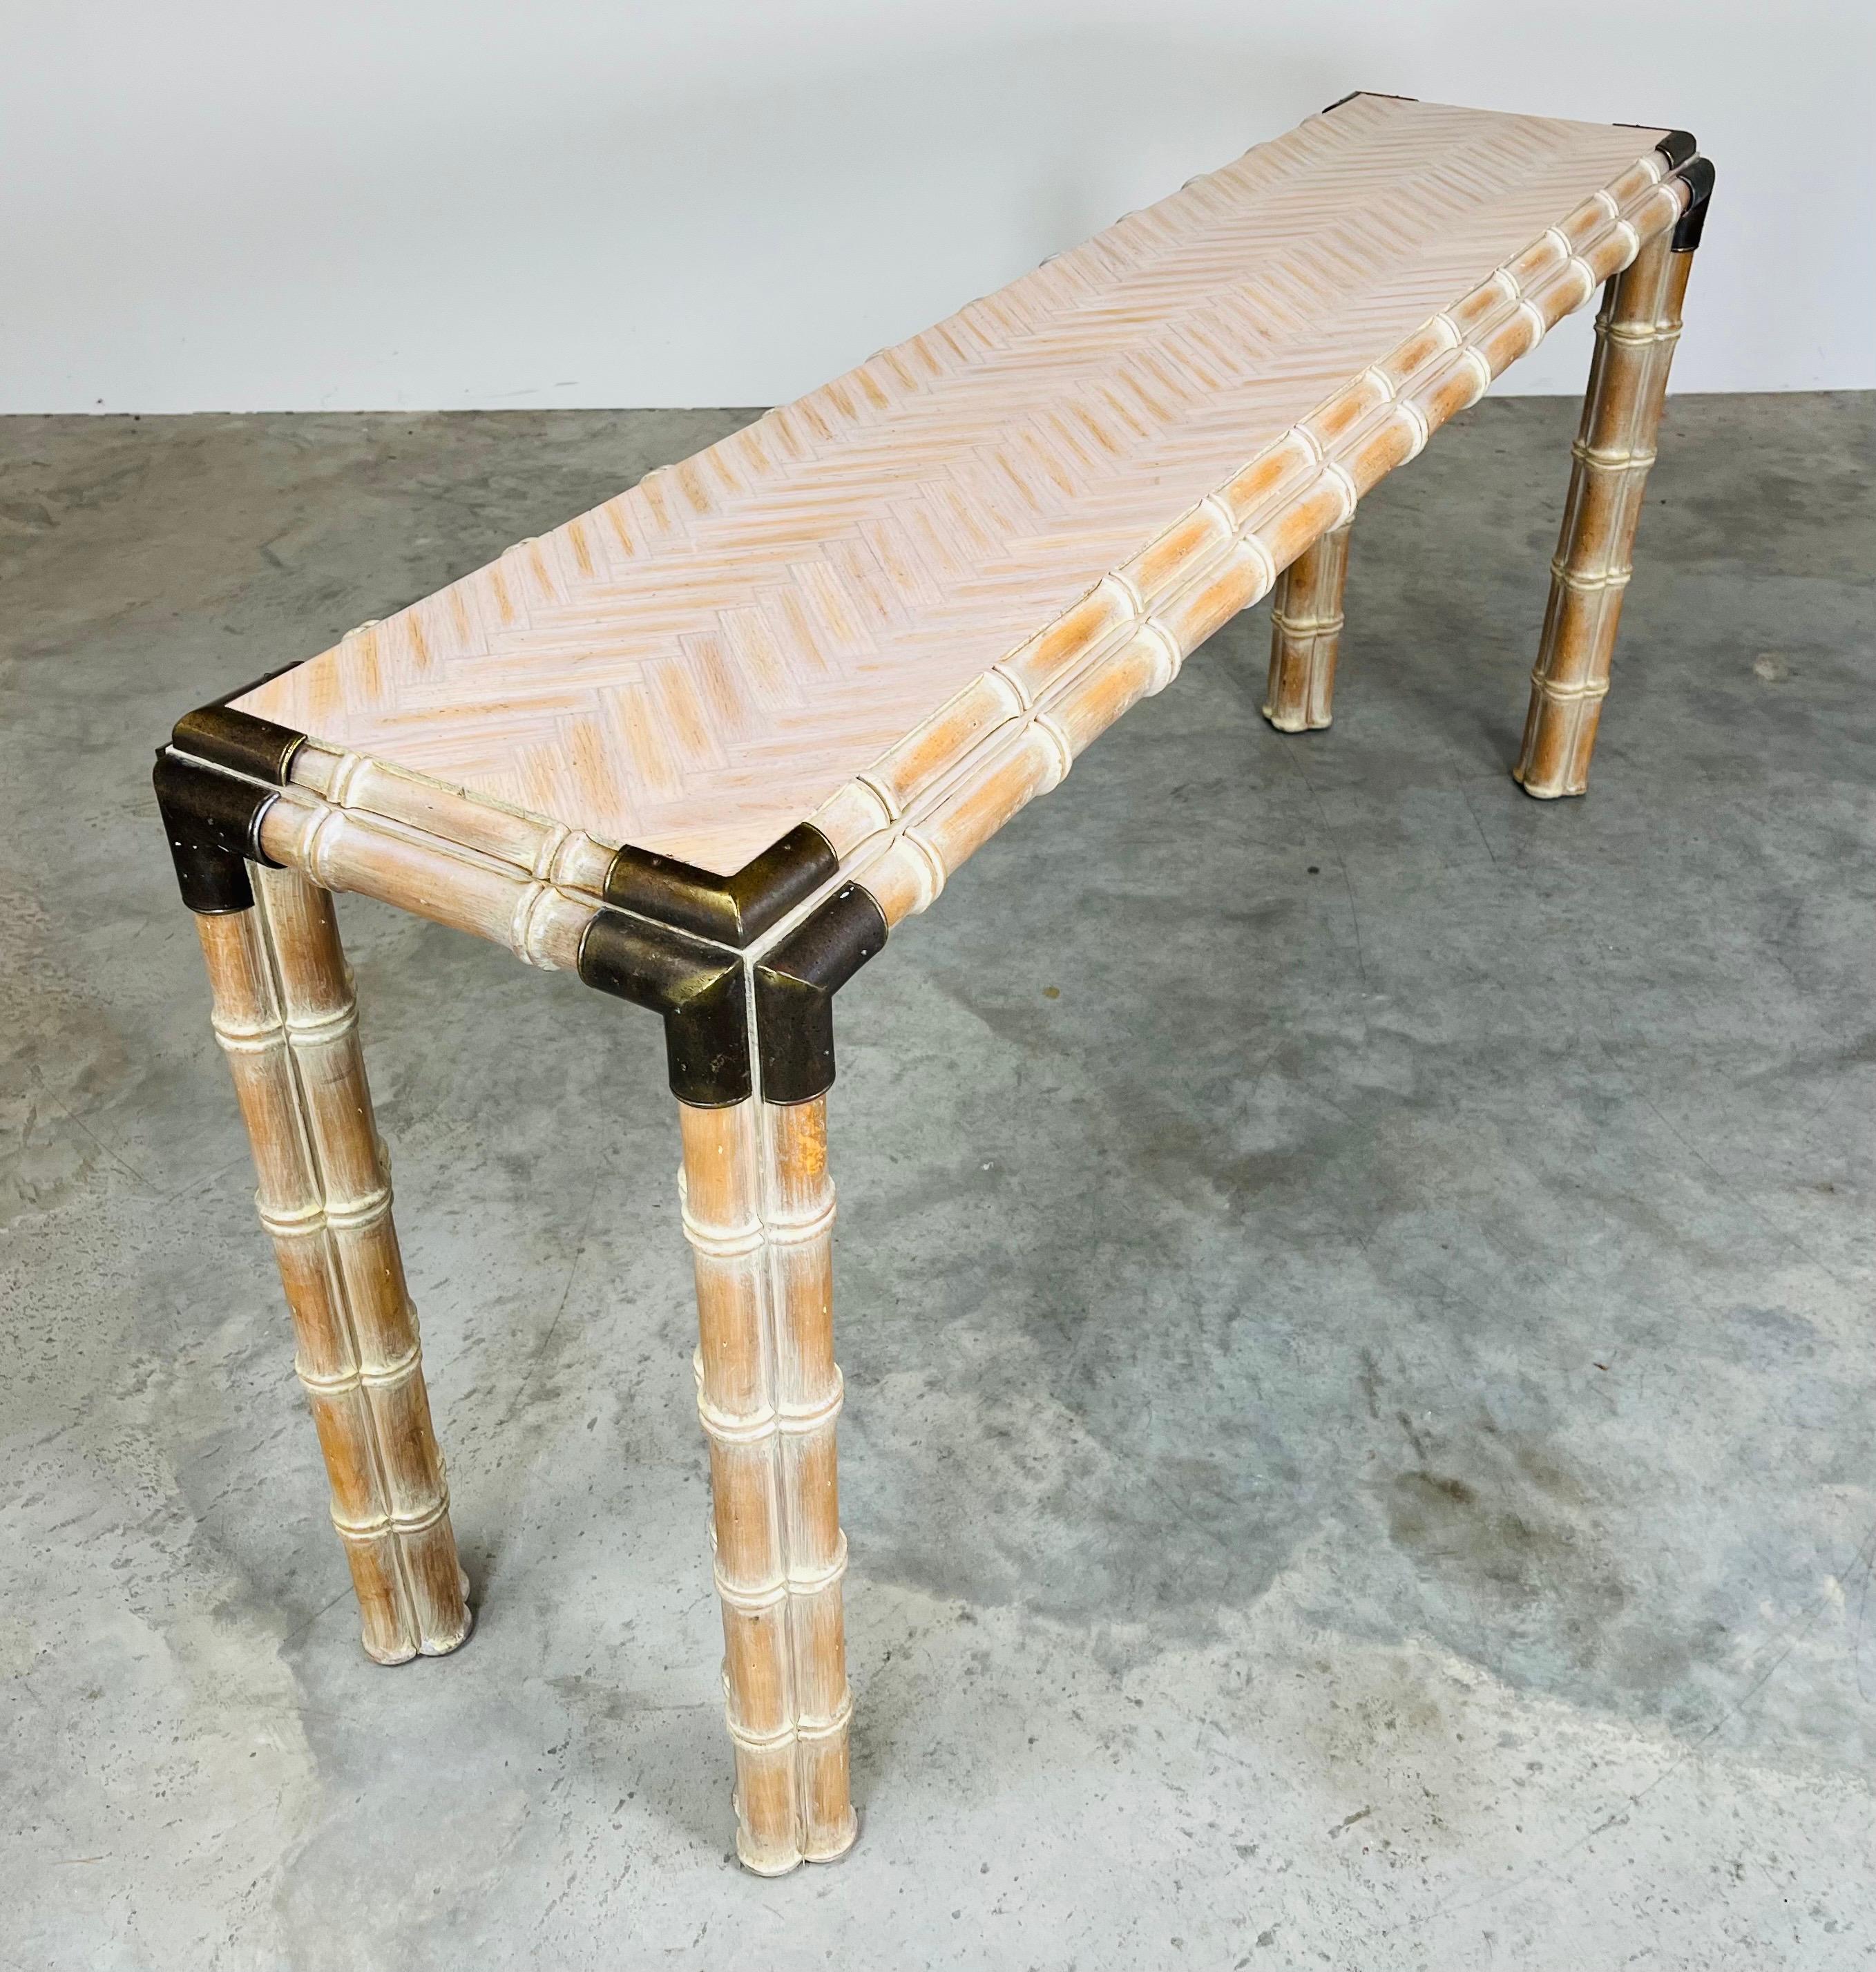 Magnifique table console en faux bambou avec un plateau en marqueterie à motifs croisés, des pieds à triple tige en faux bambou et des supports d'angle en laiton. 
Amérique du Nord vers 1970. 
Dans un état exceptionnel ayant été nettoyé et traité